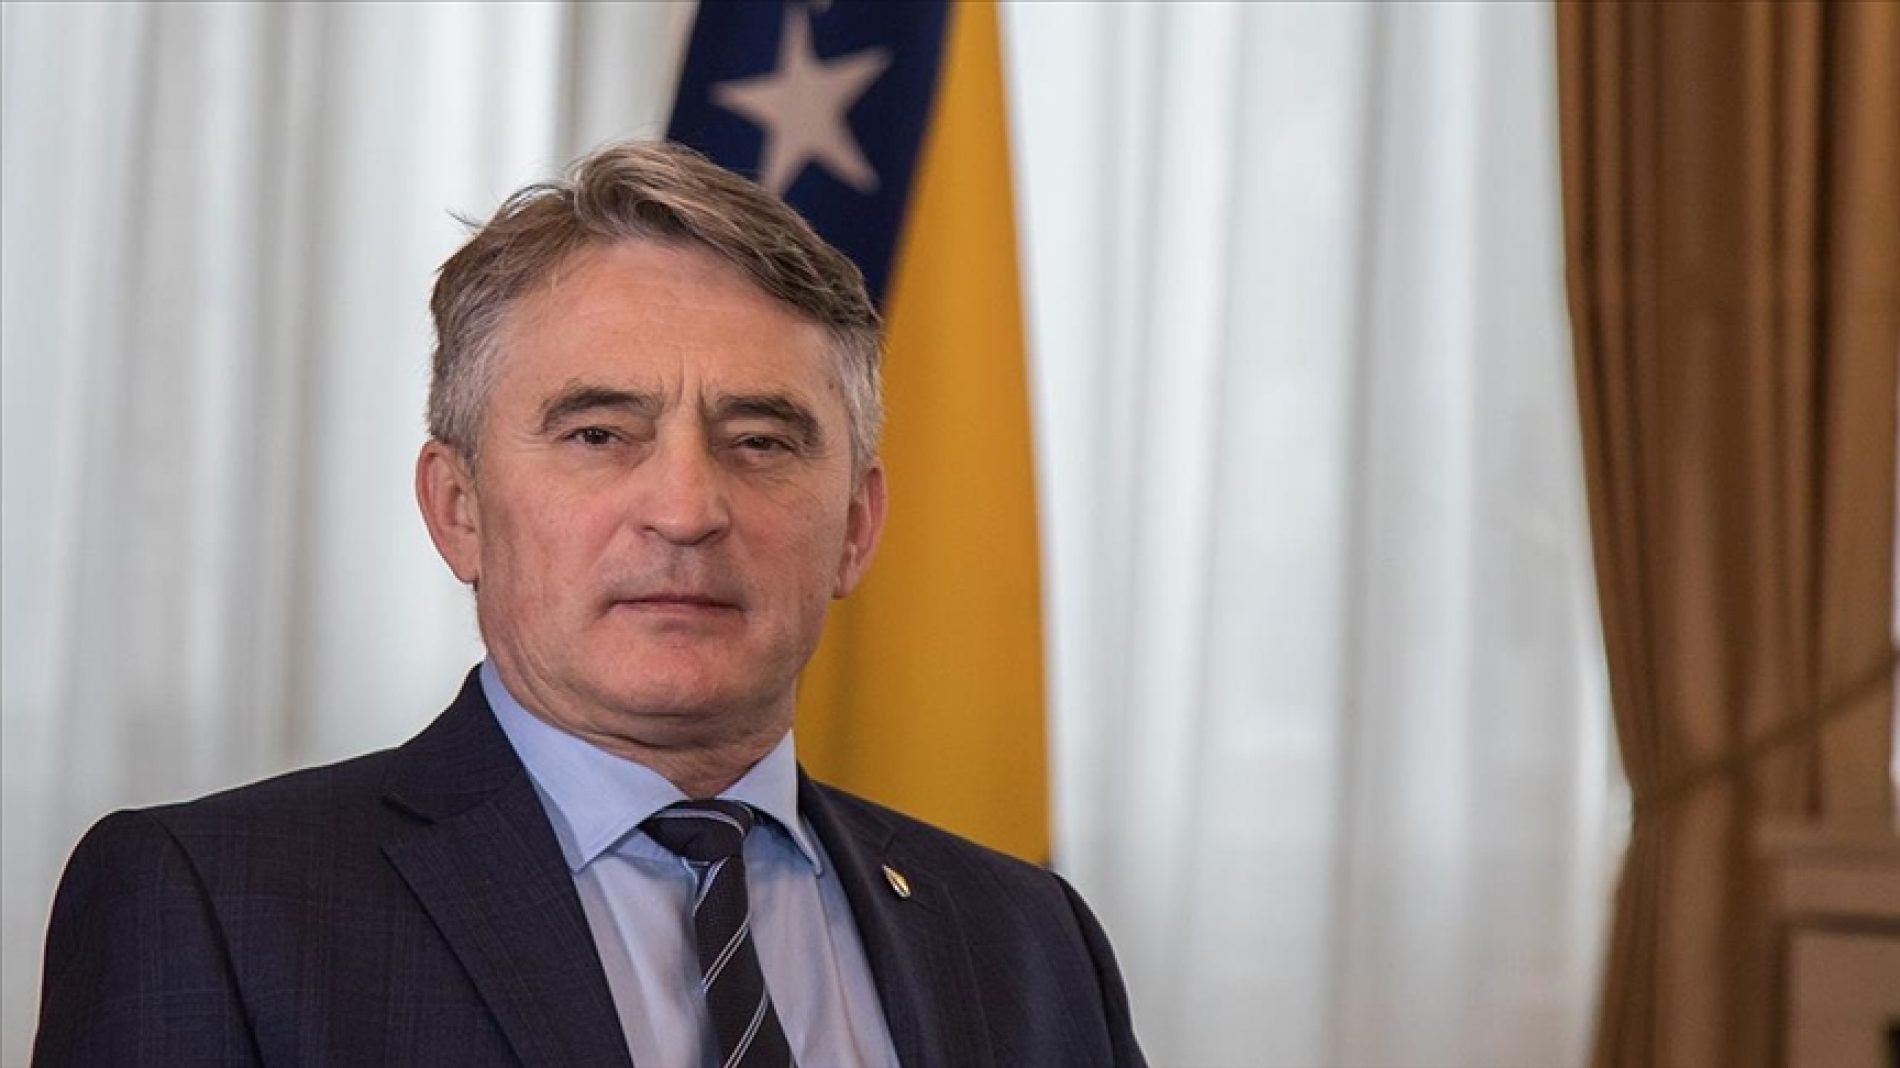 Komšić pred Vijećem Evrope zamolio da ne pristaju na diplomatske i političke razgovore, koji žele nanijeti štetu Bosni i Hercegovini